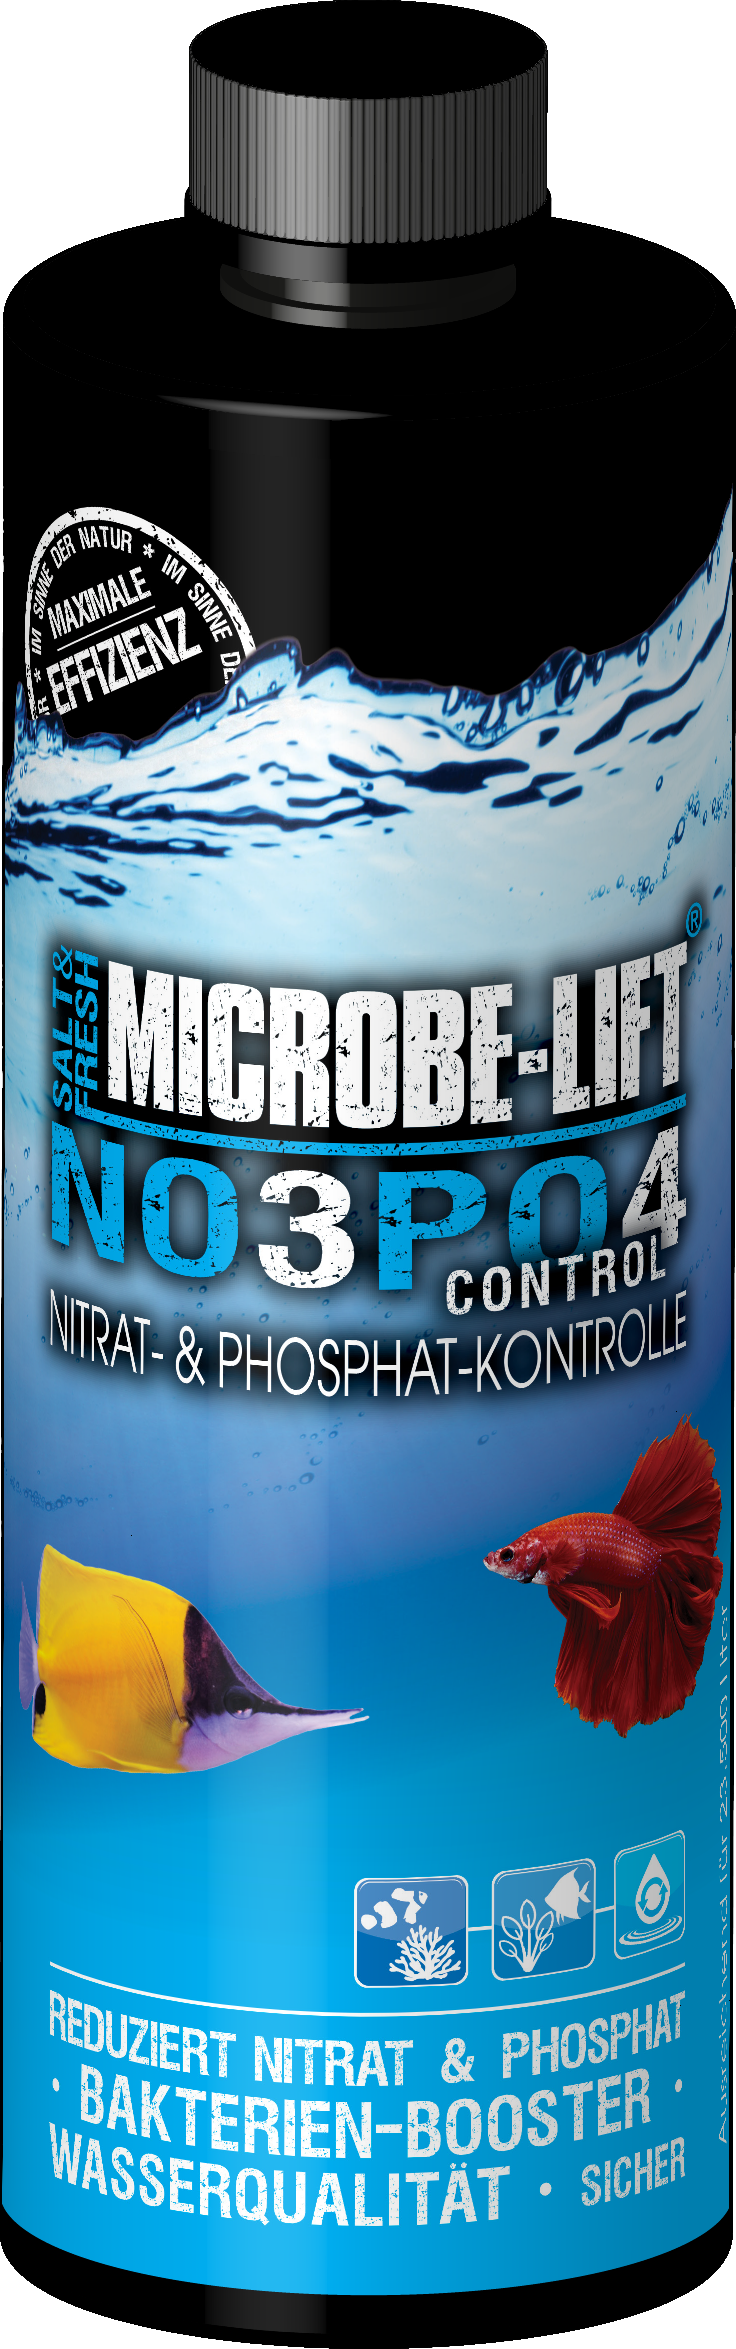 NO3PO4 Control Microbe Lift 473ml